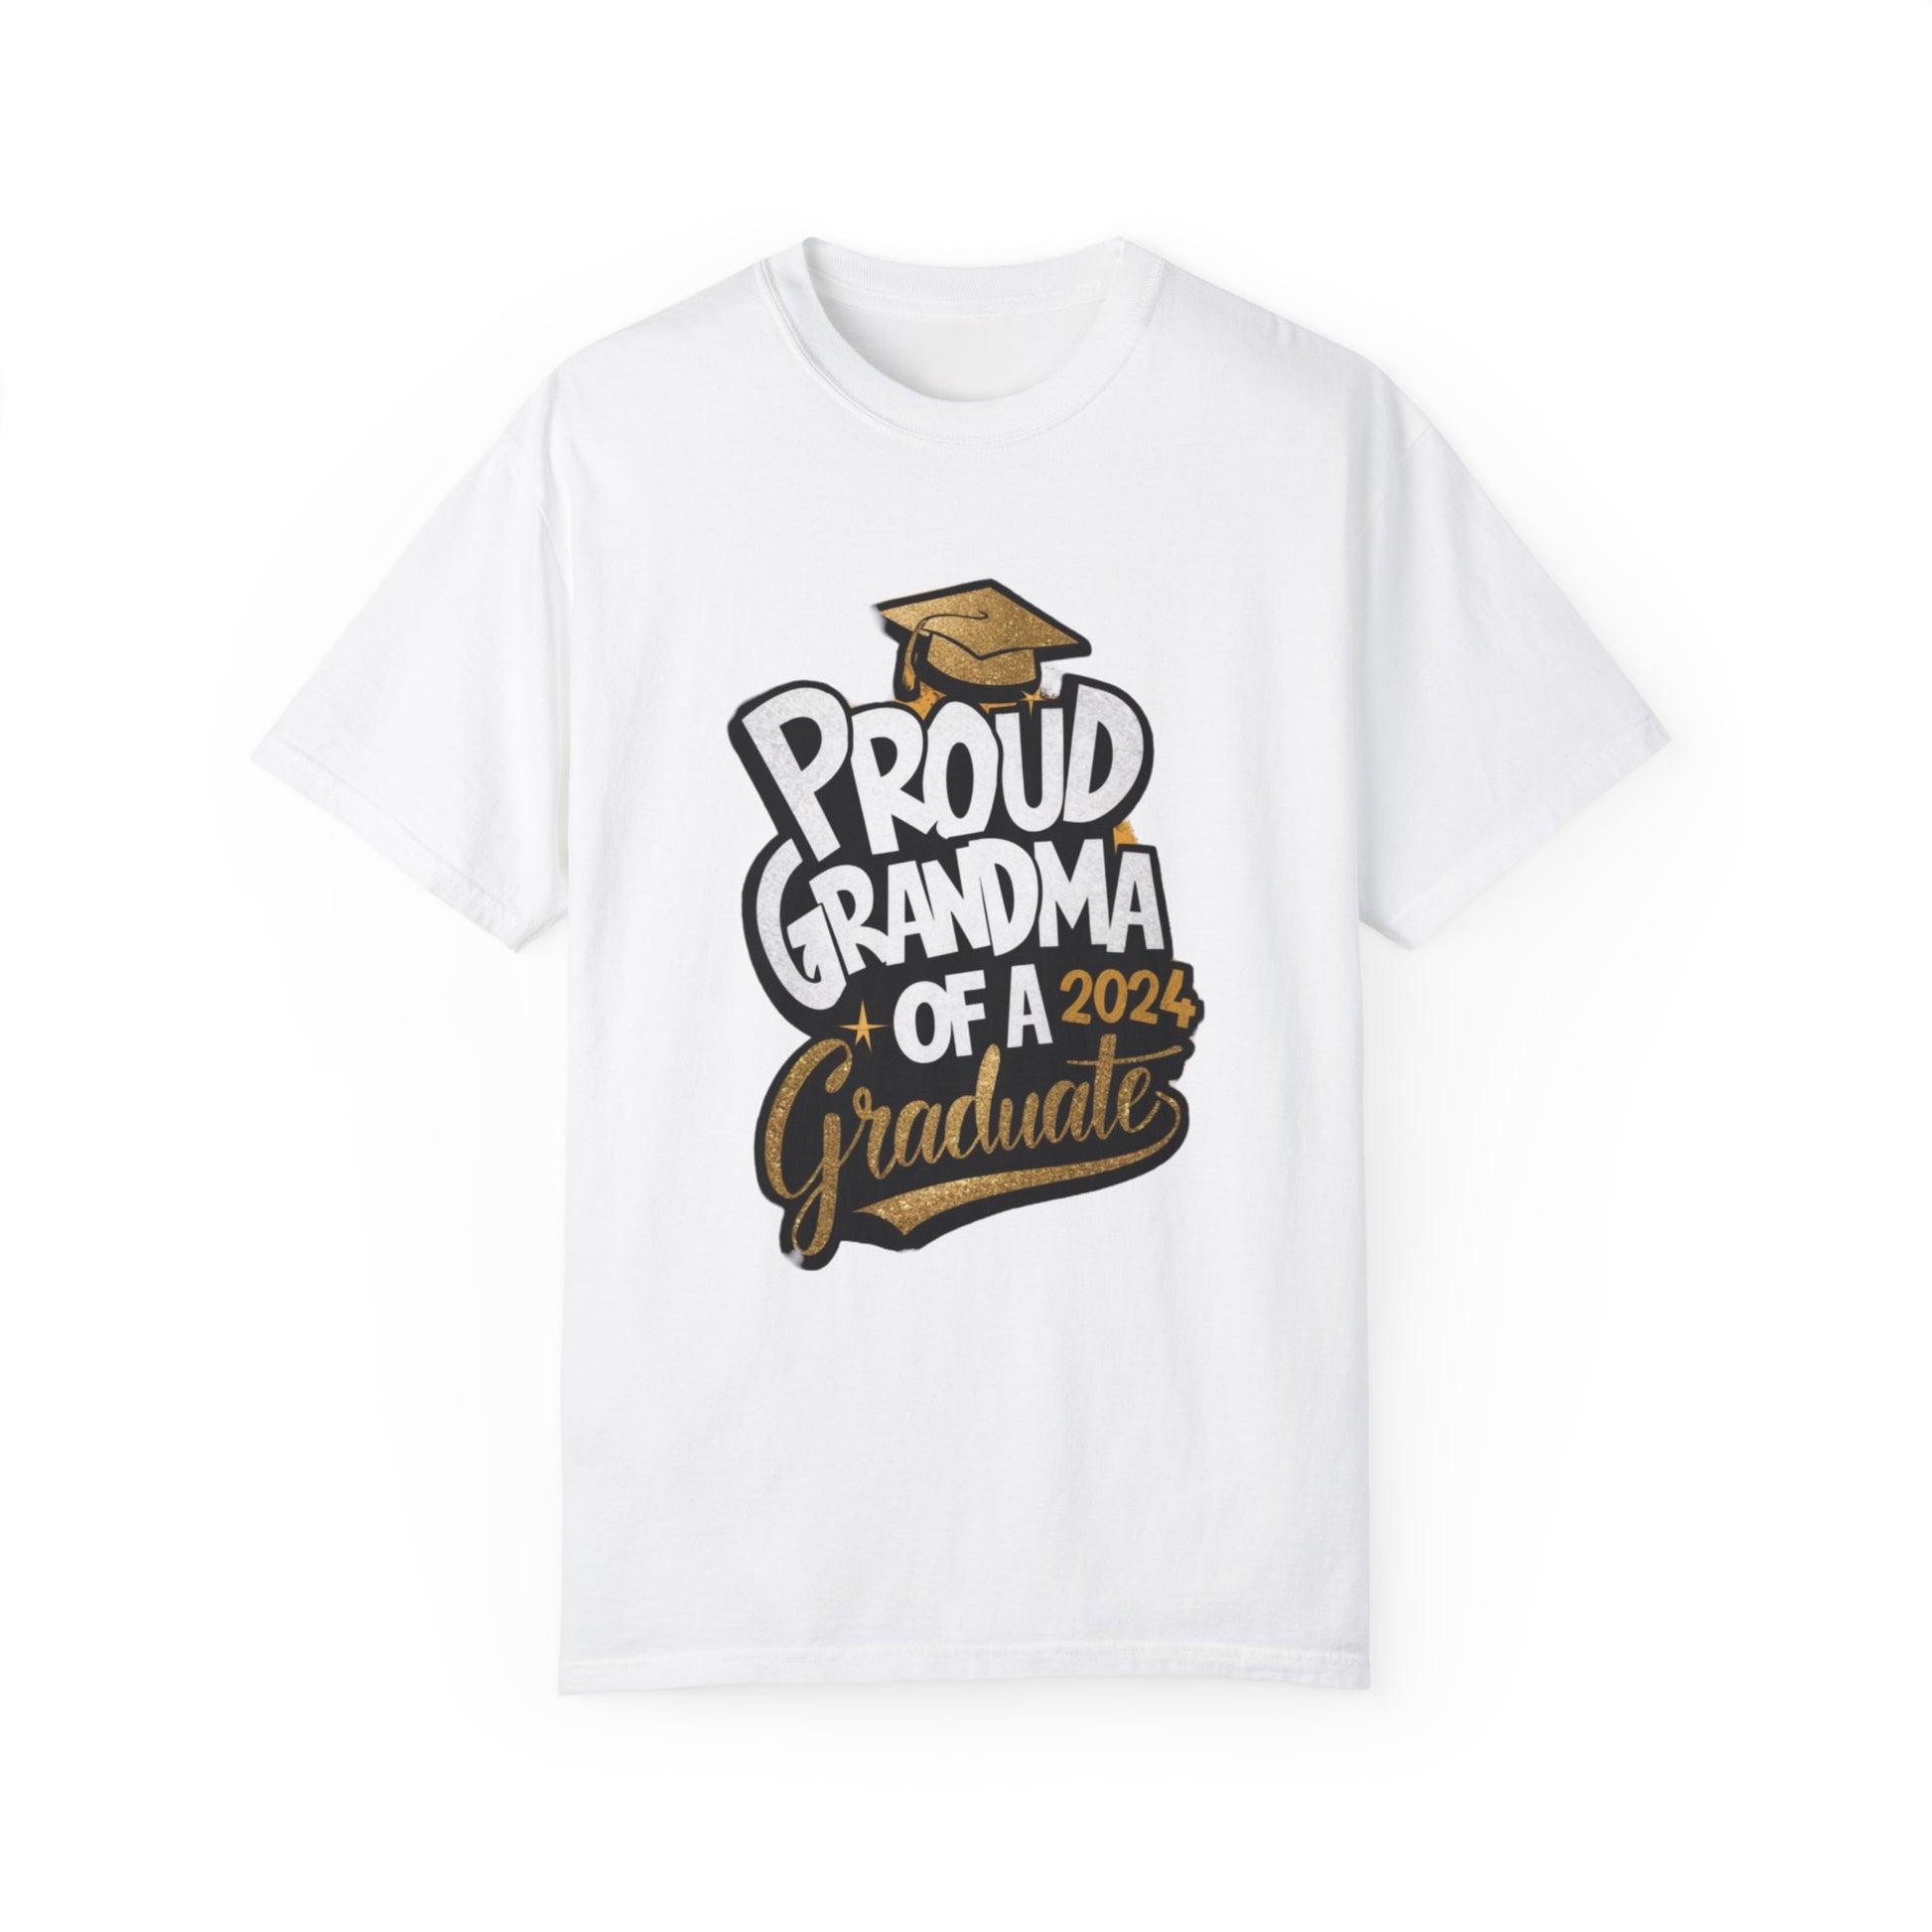 Proud of Grandma 2024 Graduate Unisex Garment-dyed T-shirt Cotton Funny Humorous Graphic Soft Premium Unisex Men Women White T-shirt Birthday Gift-3